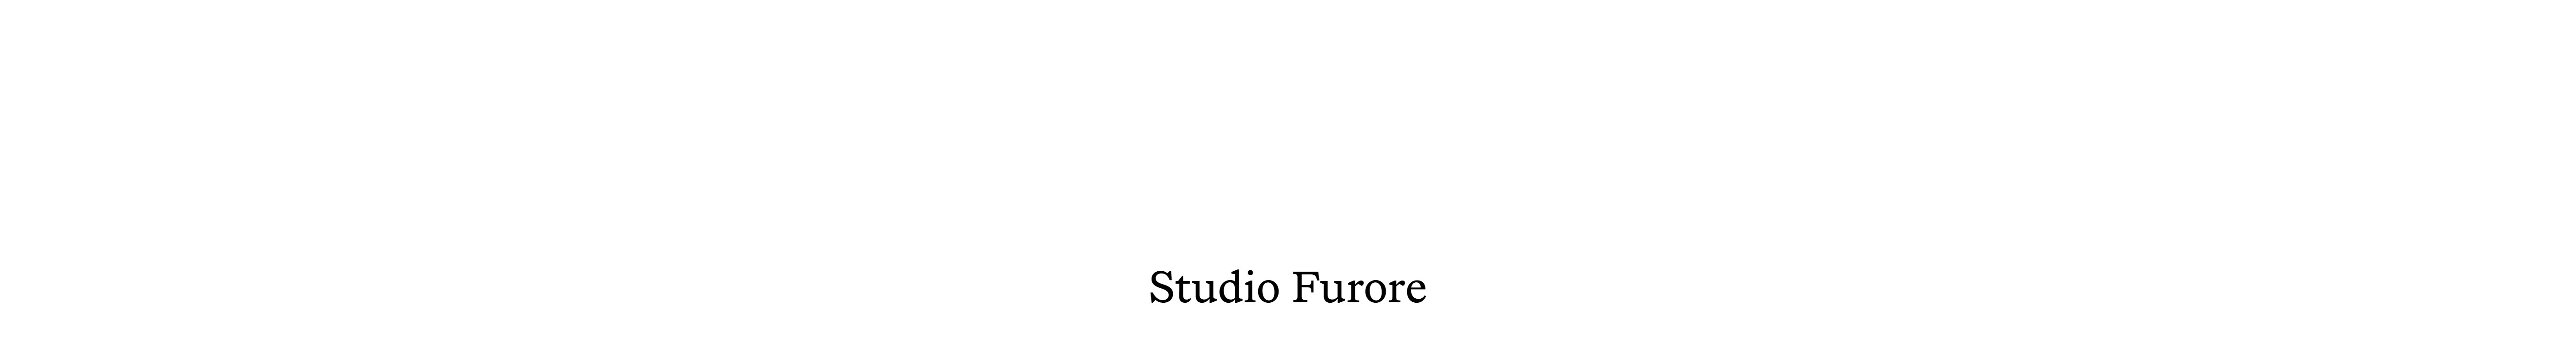 Studio Furore 님의 프로필 배너